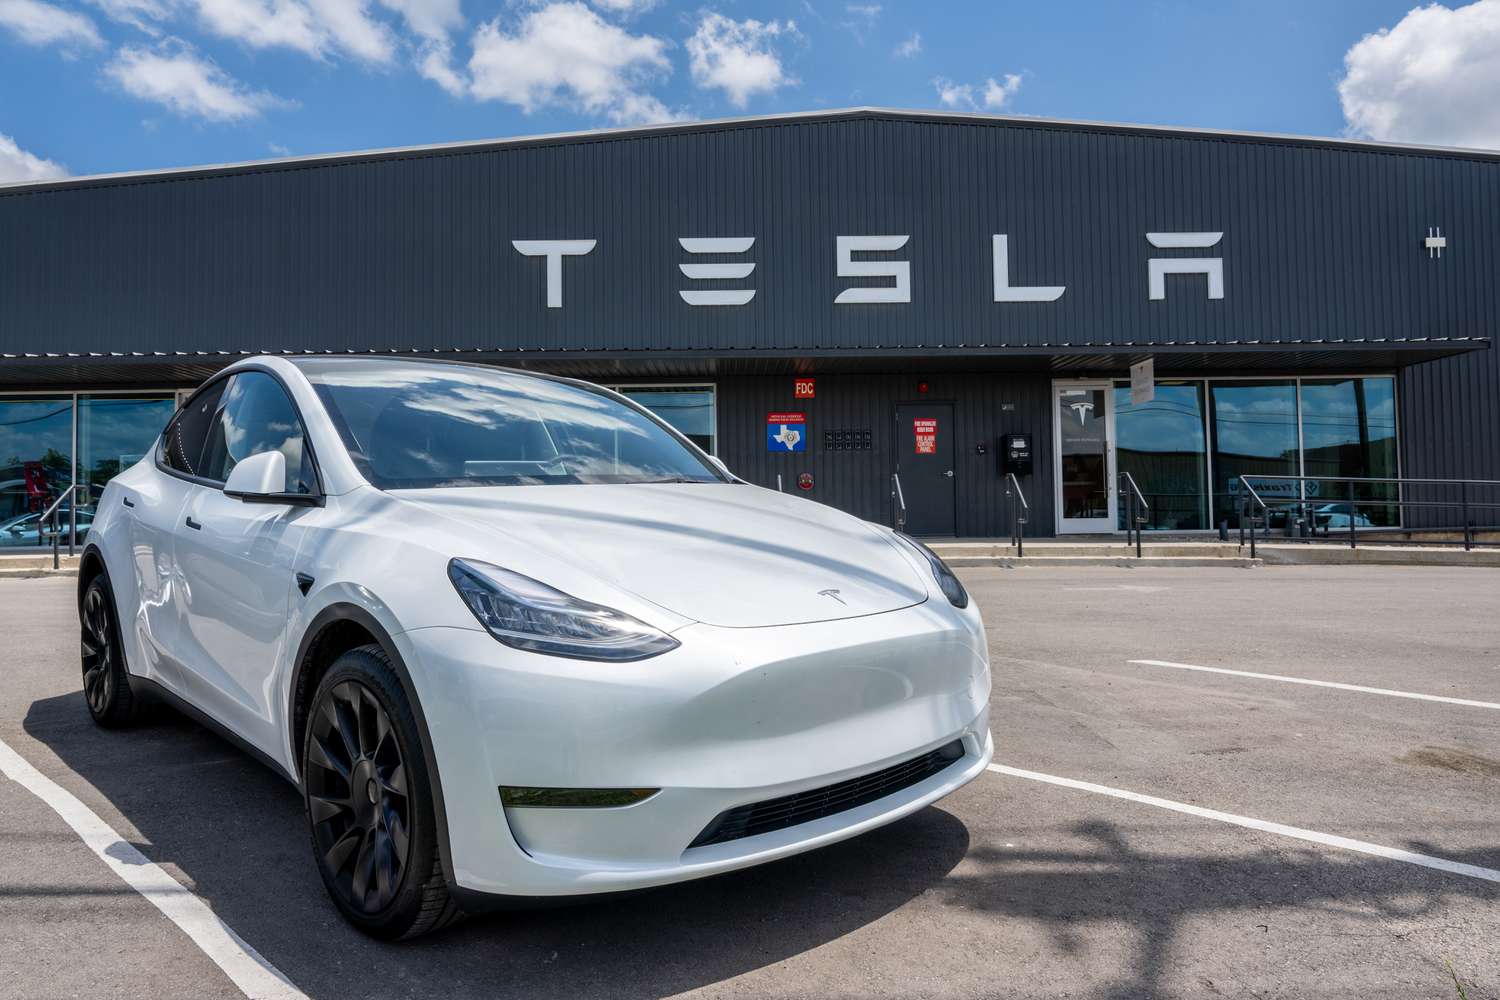 Tesla wycofuje 125 000 pojazdów z powodu problemów z pasami bezpieczeństwa